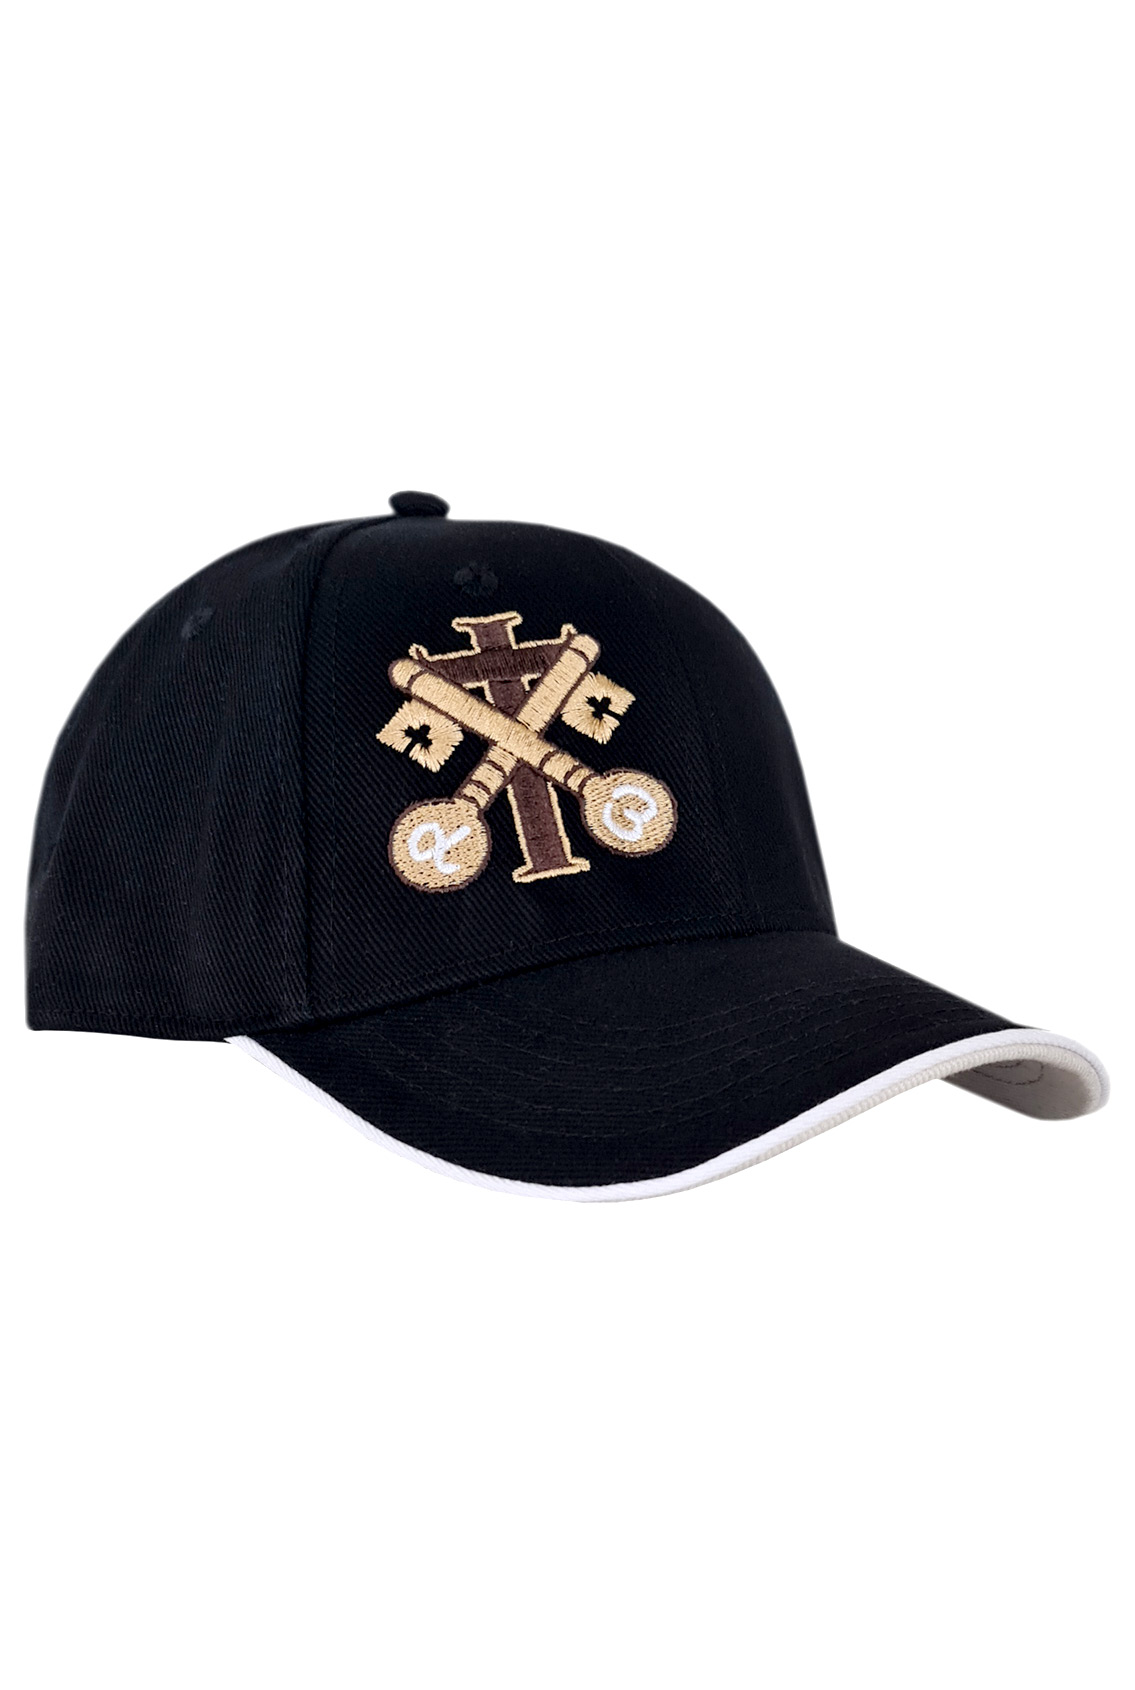 caps with Orthodox symbols